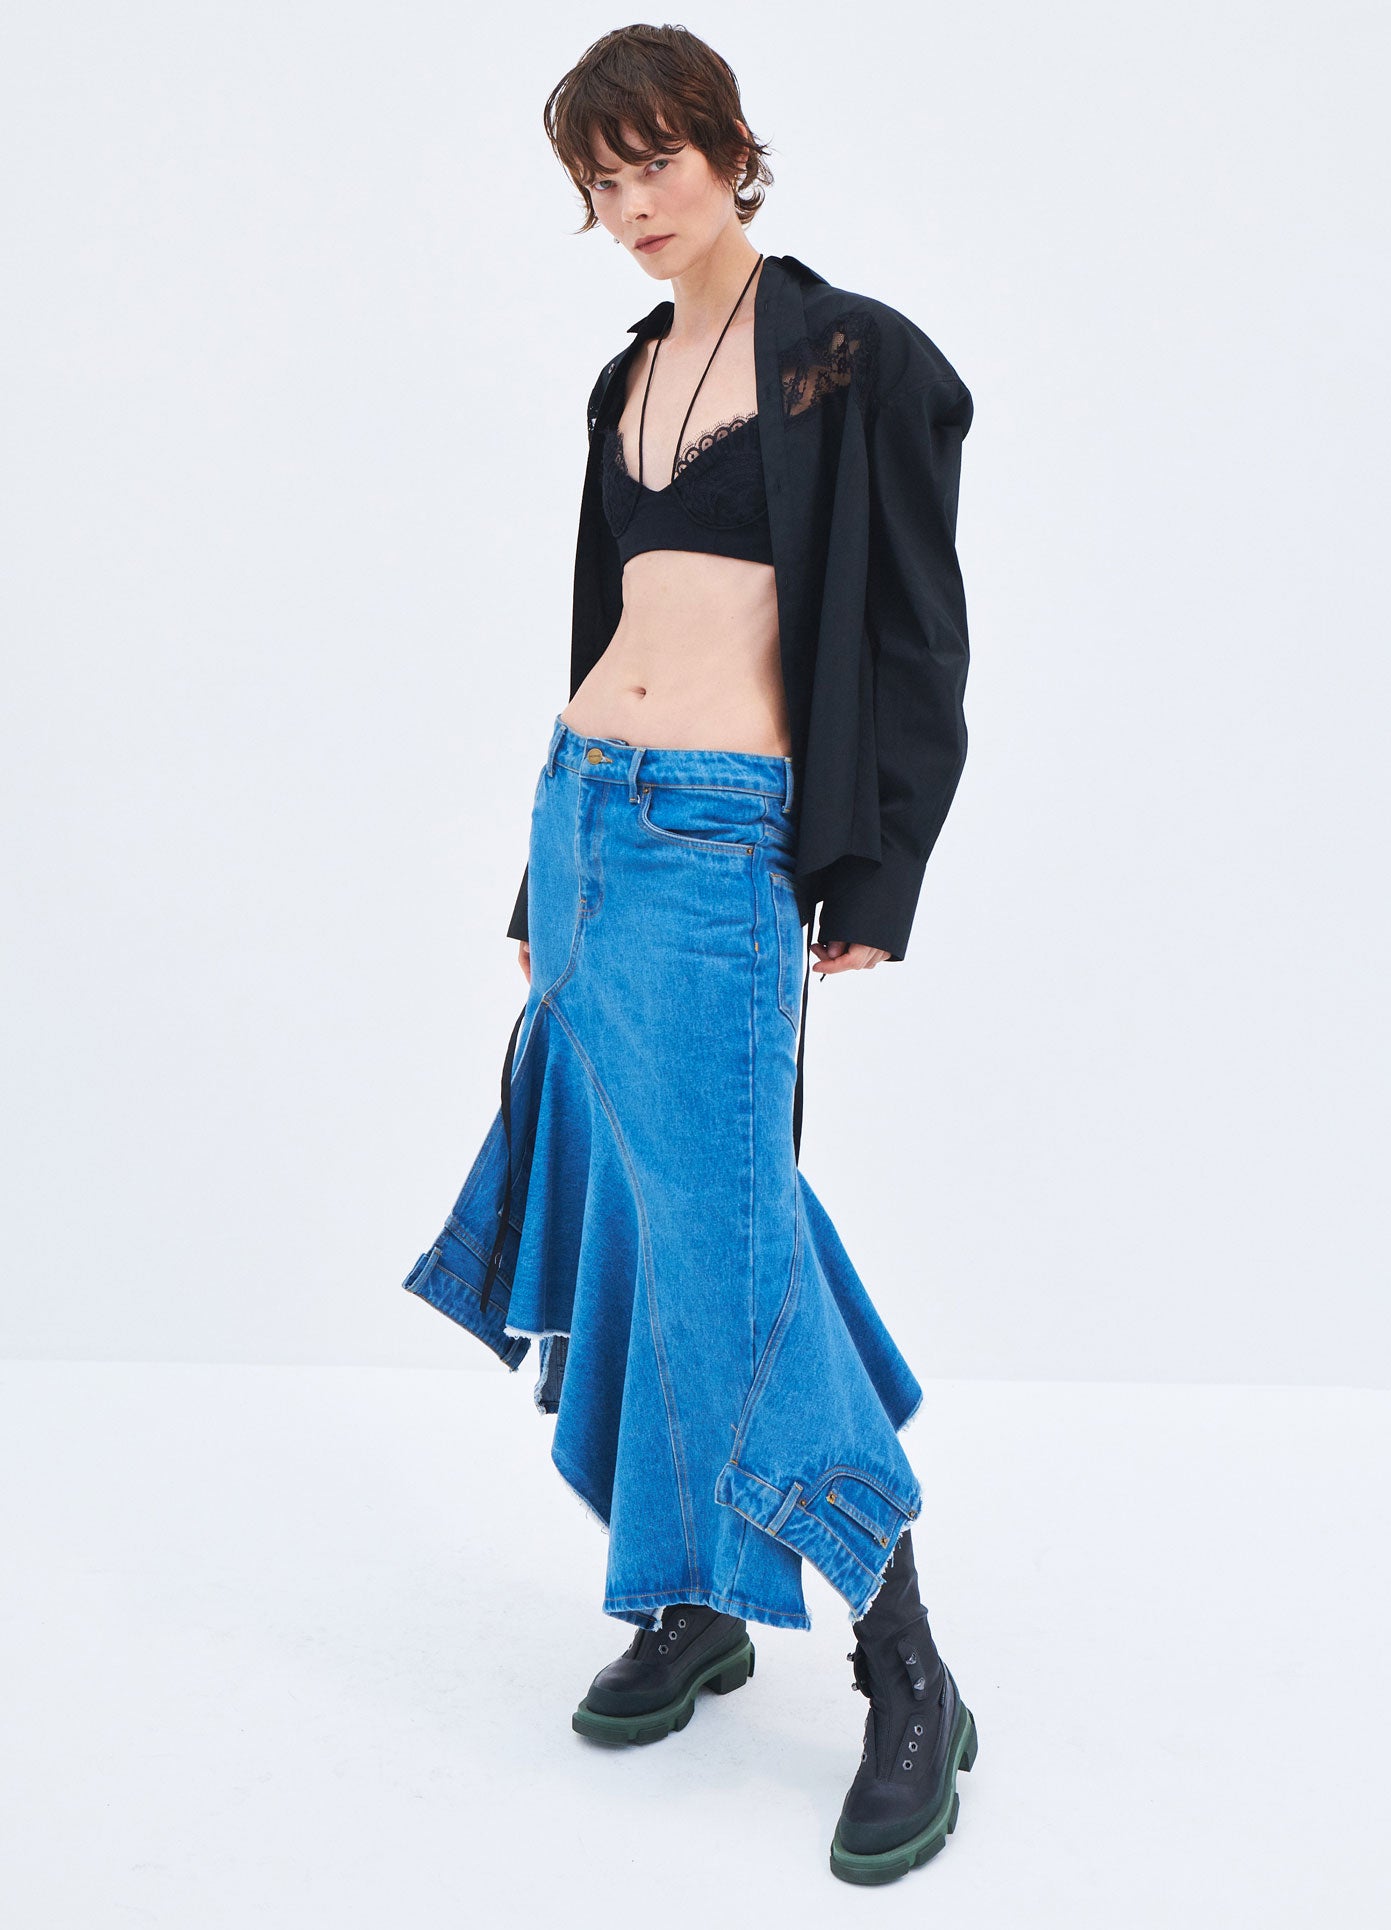 MONSE Spring 2024 Deconstructed Long Denim Skirt in Indigo on model side view